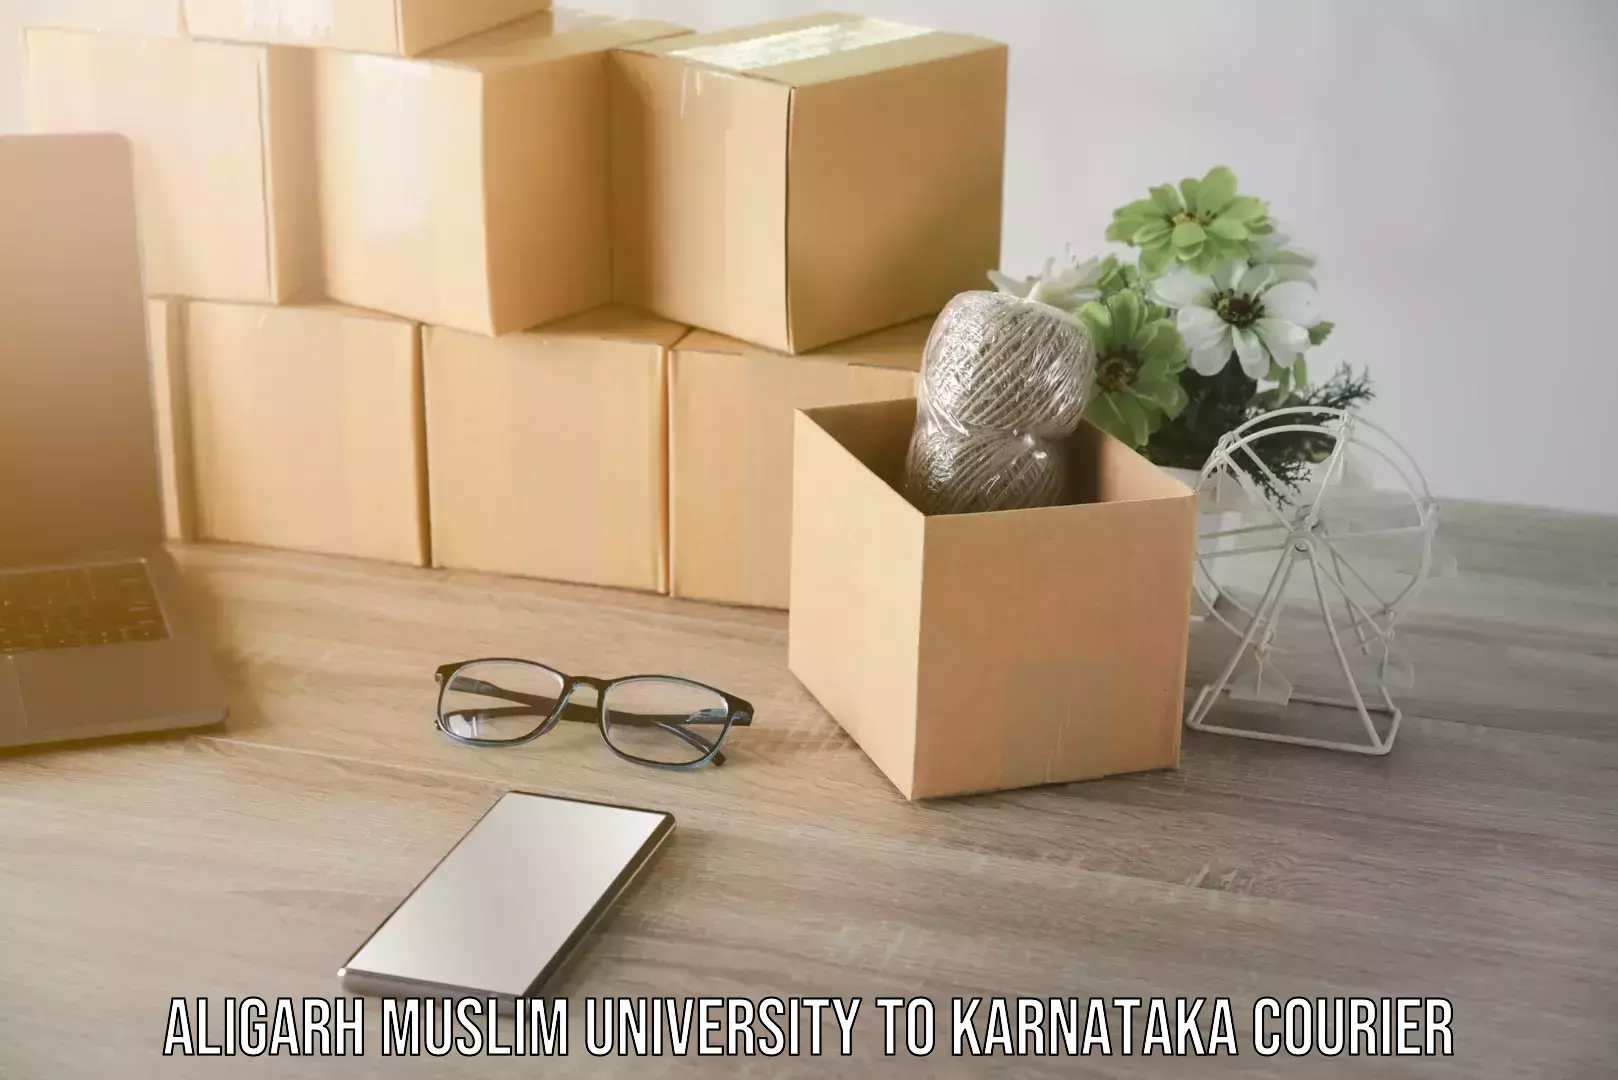 Next day courier Aligarh Muslim University to Karnataka